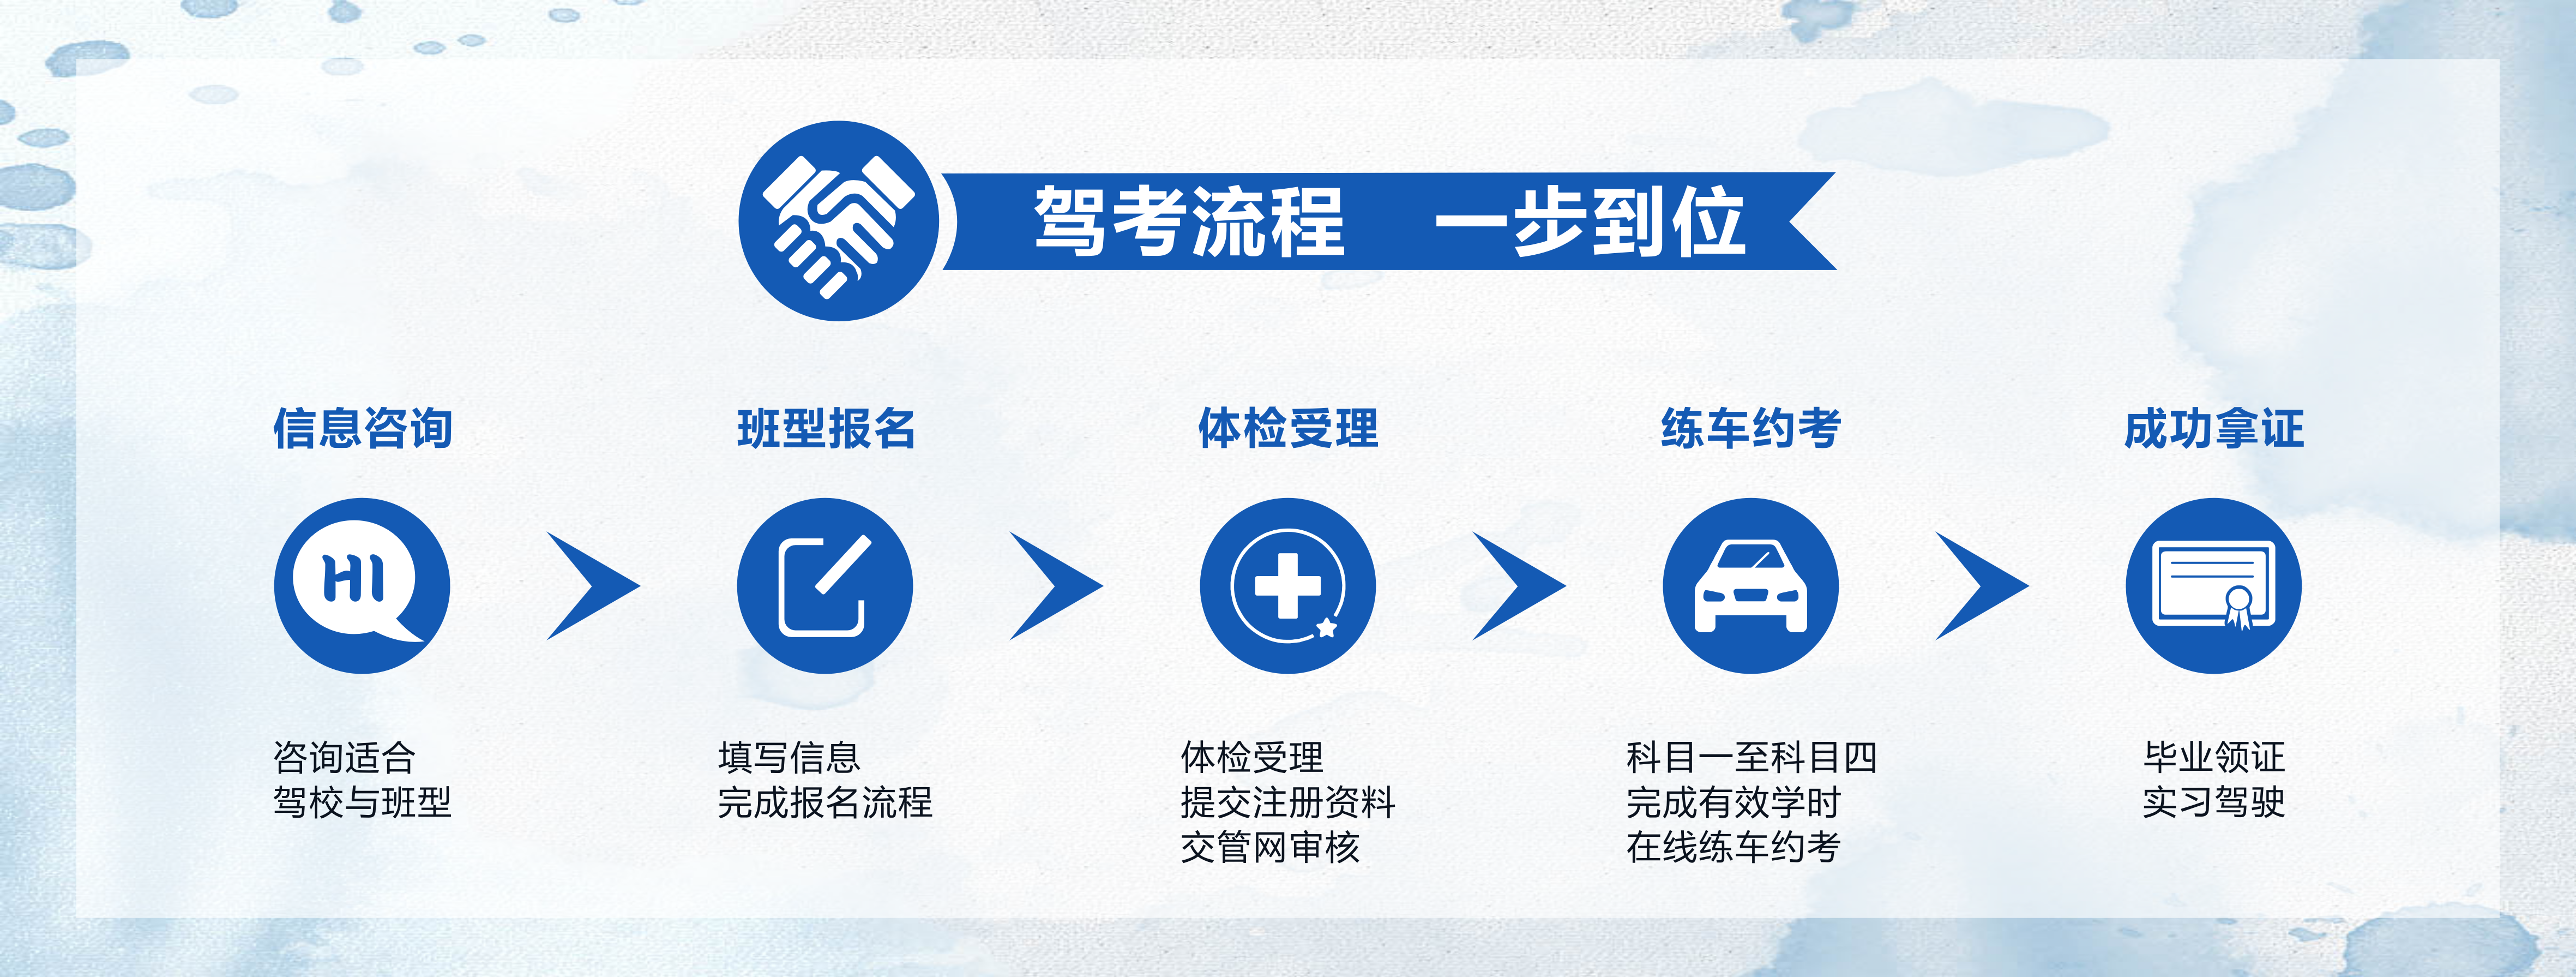 郑州驾校学车流程